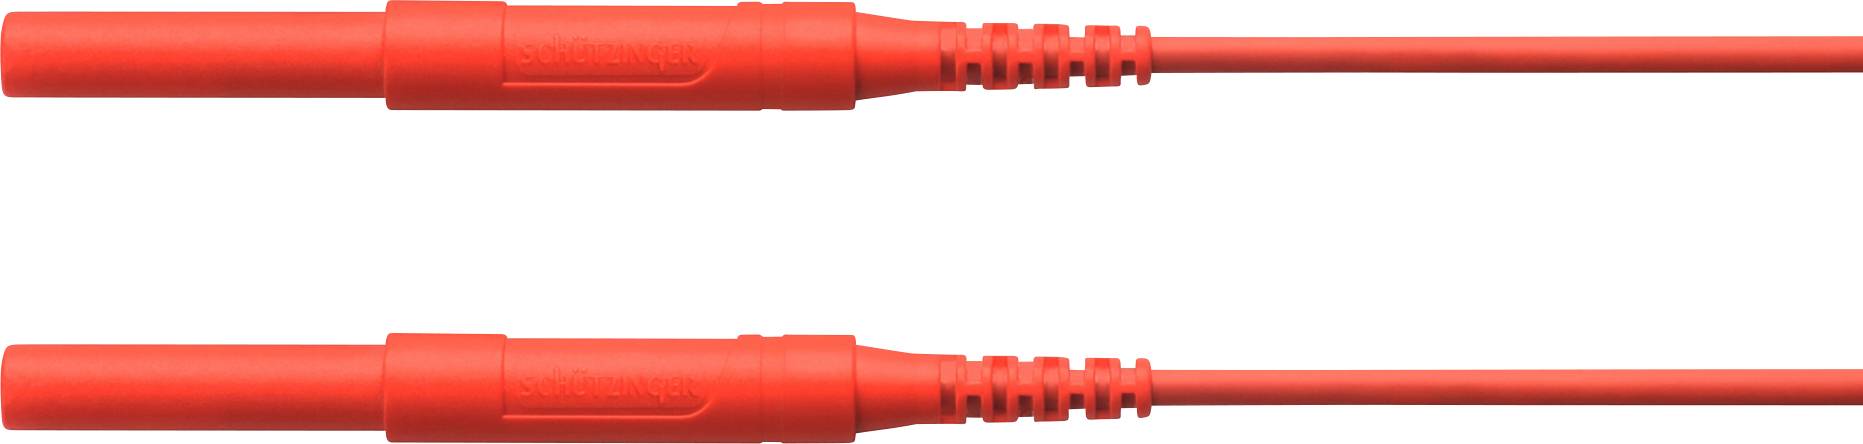 SCHÜTZINGER HSPL 8568 / AWG16 / 100 / RT Sicherheits-Messleitung [Stecker 4 mm - Stecker 4 mm]